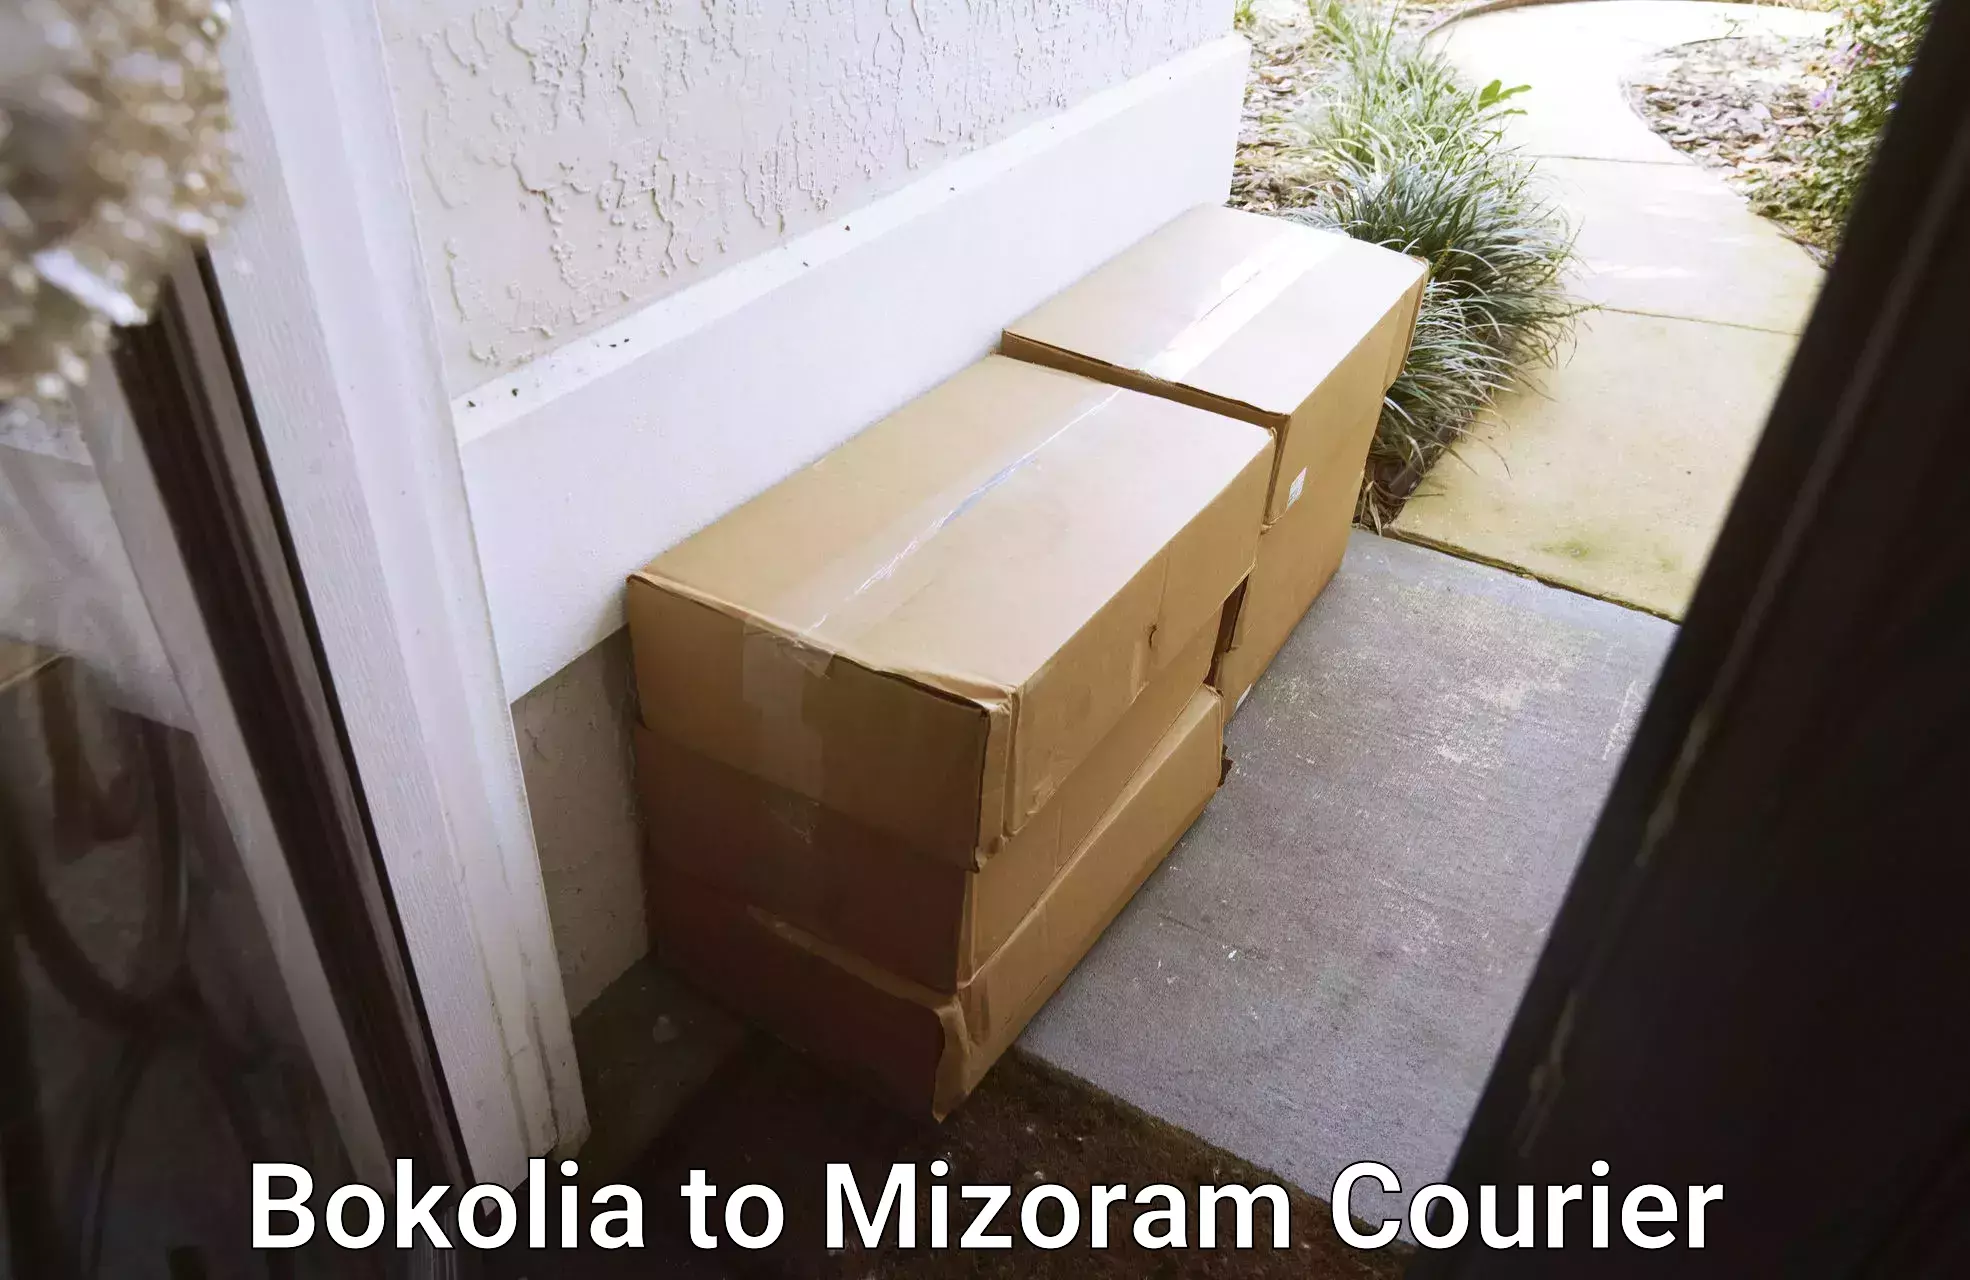 Supply chain delivery Bokolia to Aizawl